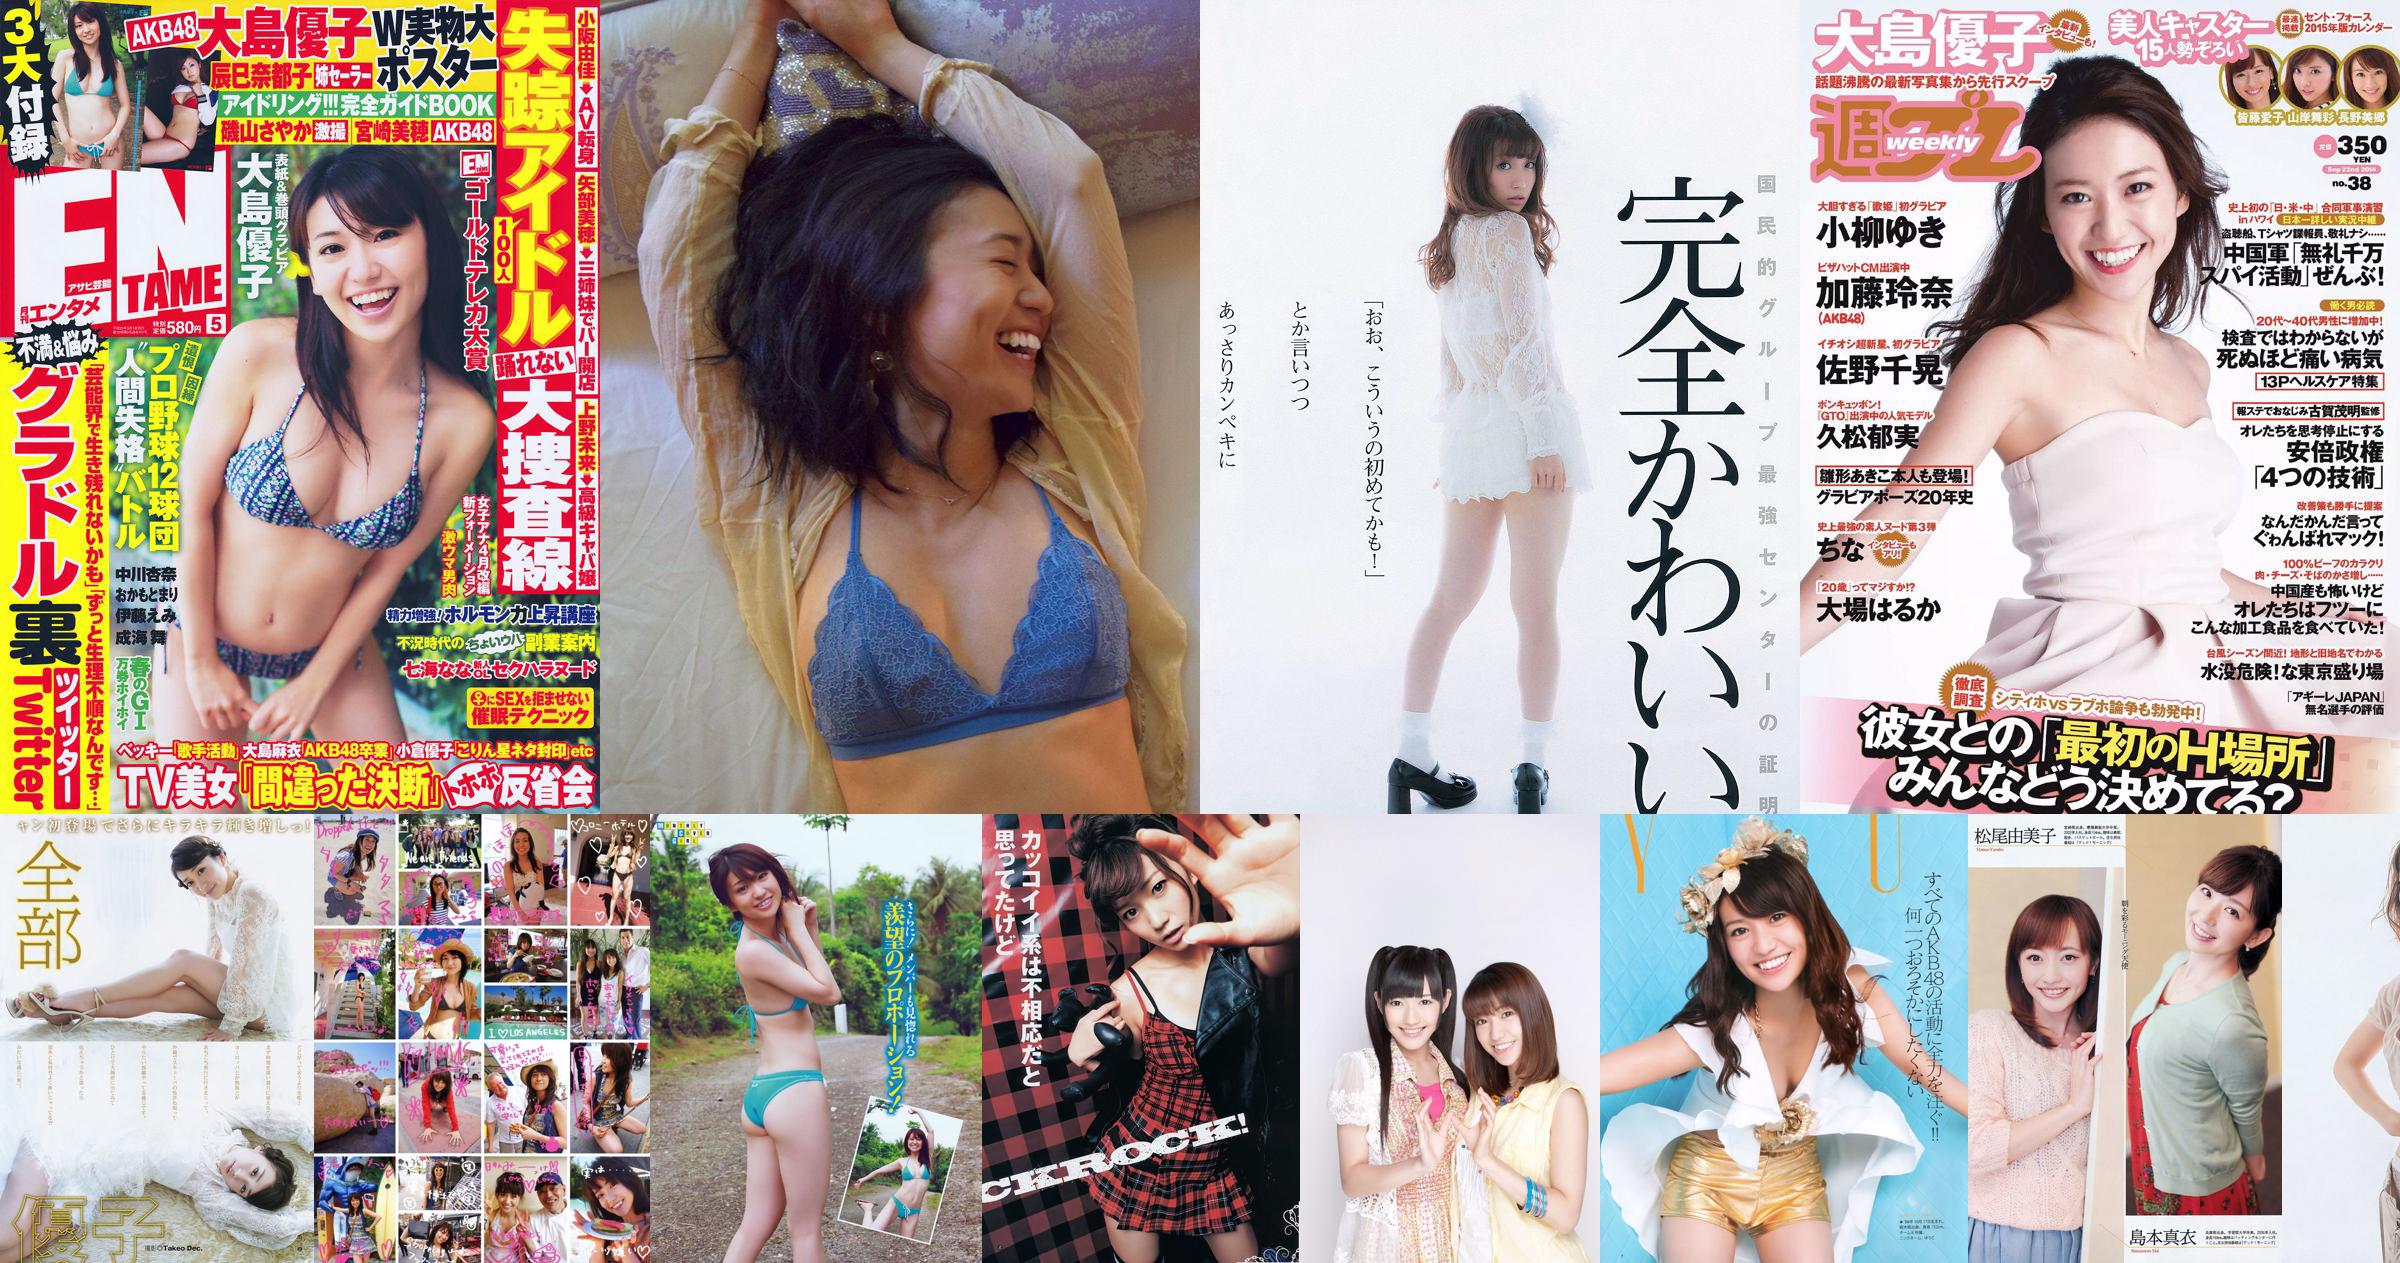 Yuko Oshima Haruna Kojima Sayaka Yoshino Nogizaka46 AKB48 Miwako Kakei Anna Tachibana Rara Anzai [Weekly Playboy] 2014 No.15 Photo No.3c7d6d Page 6